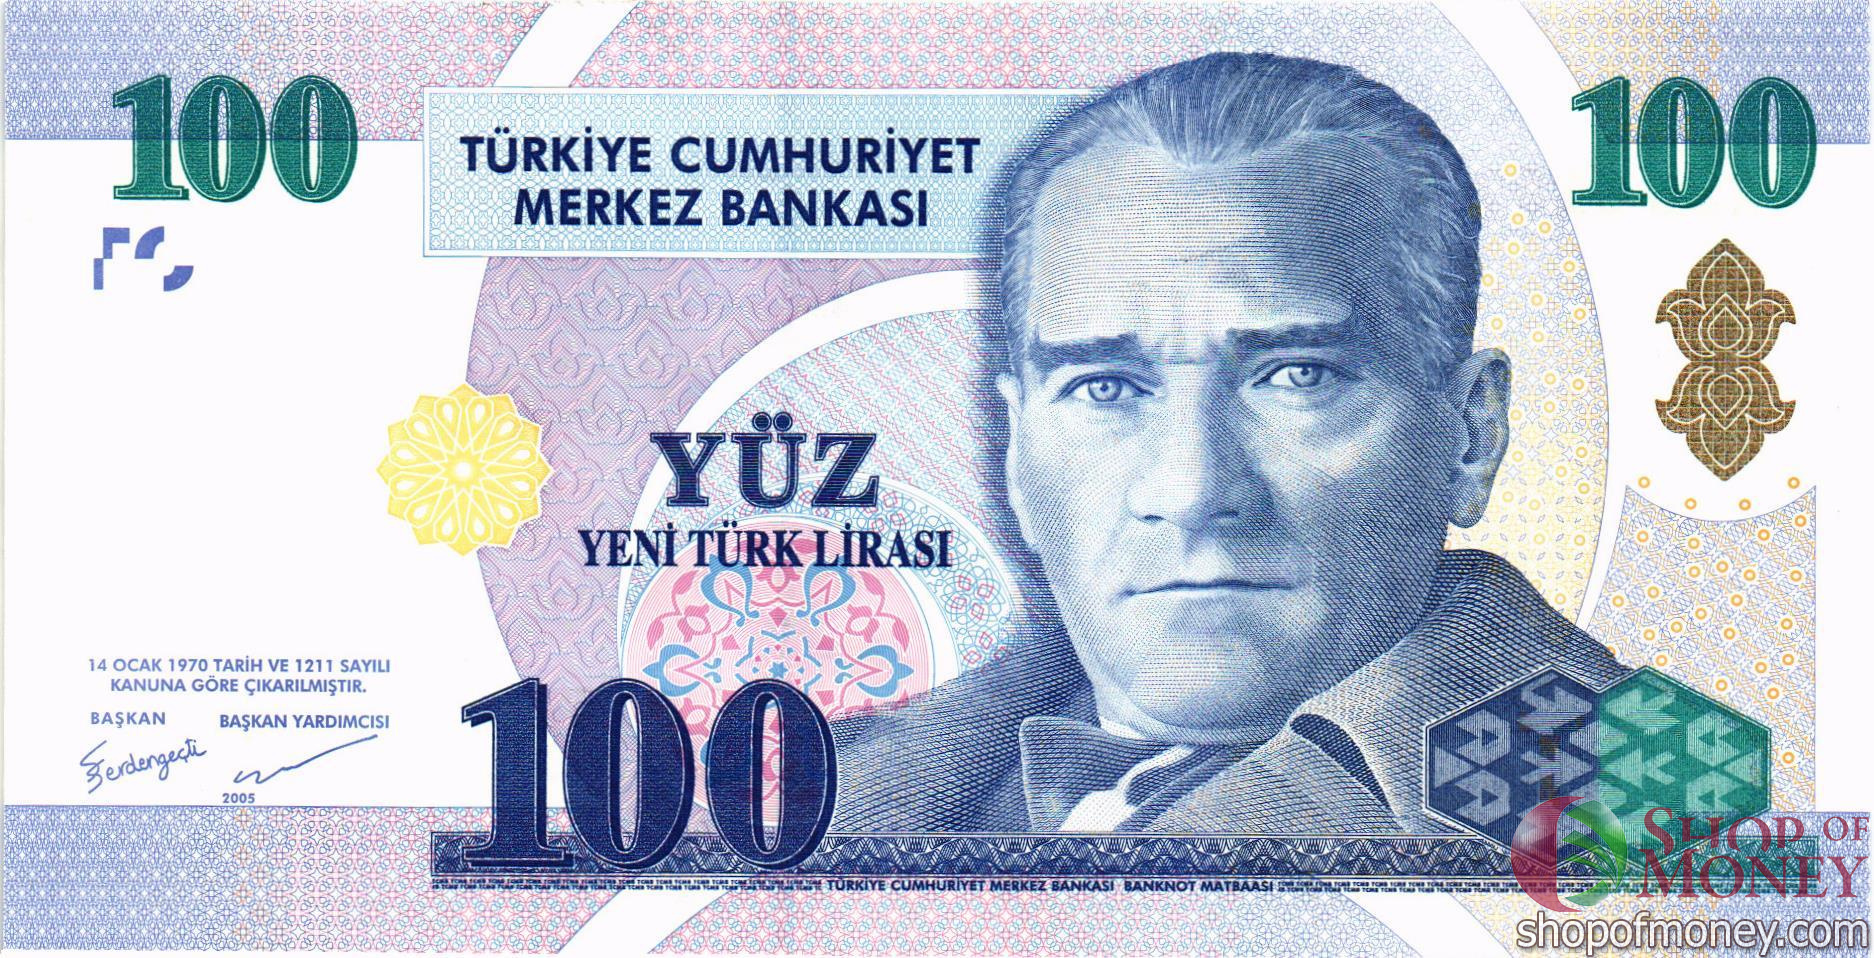 100 Турецких лир купюра